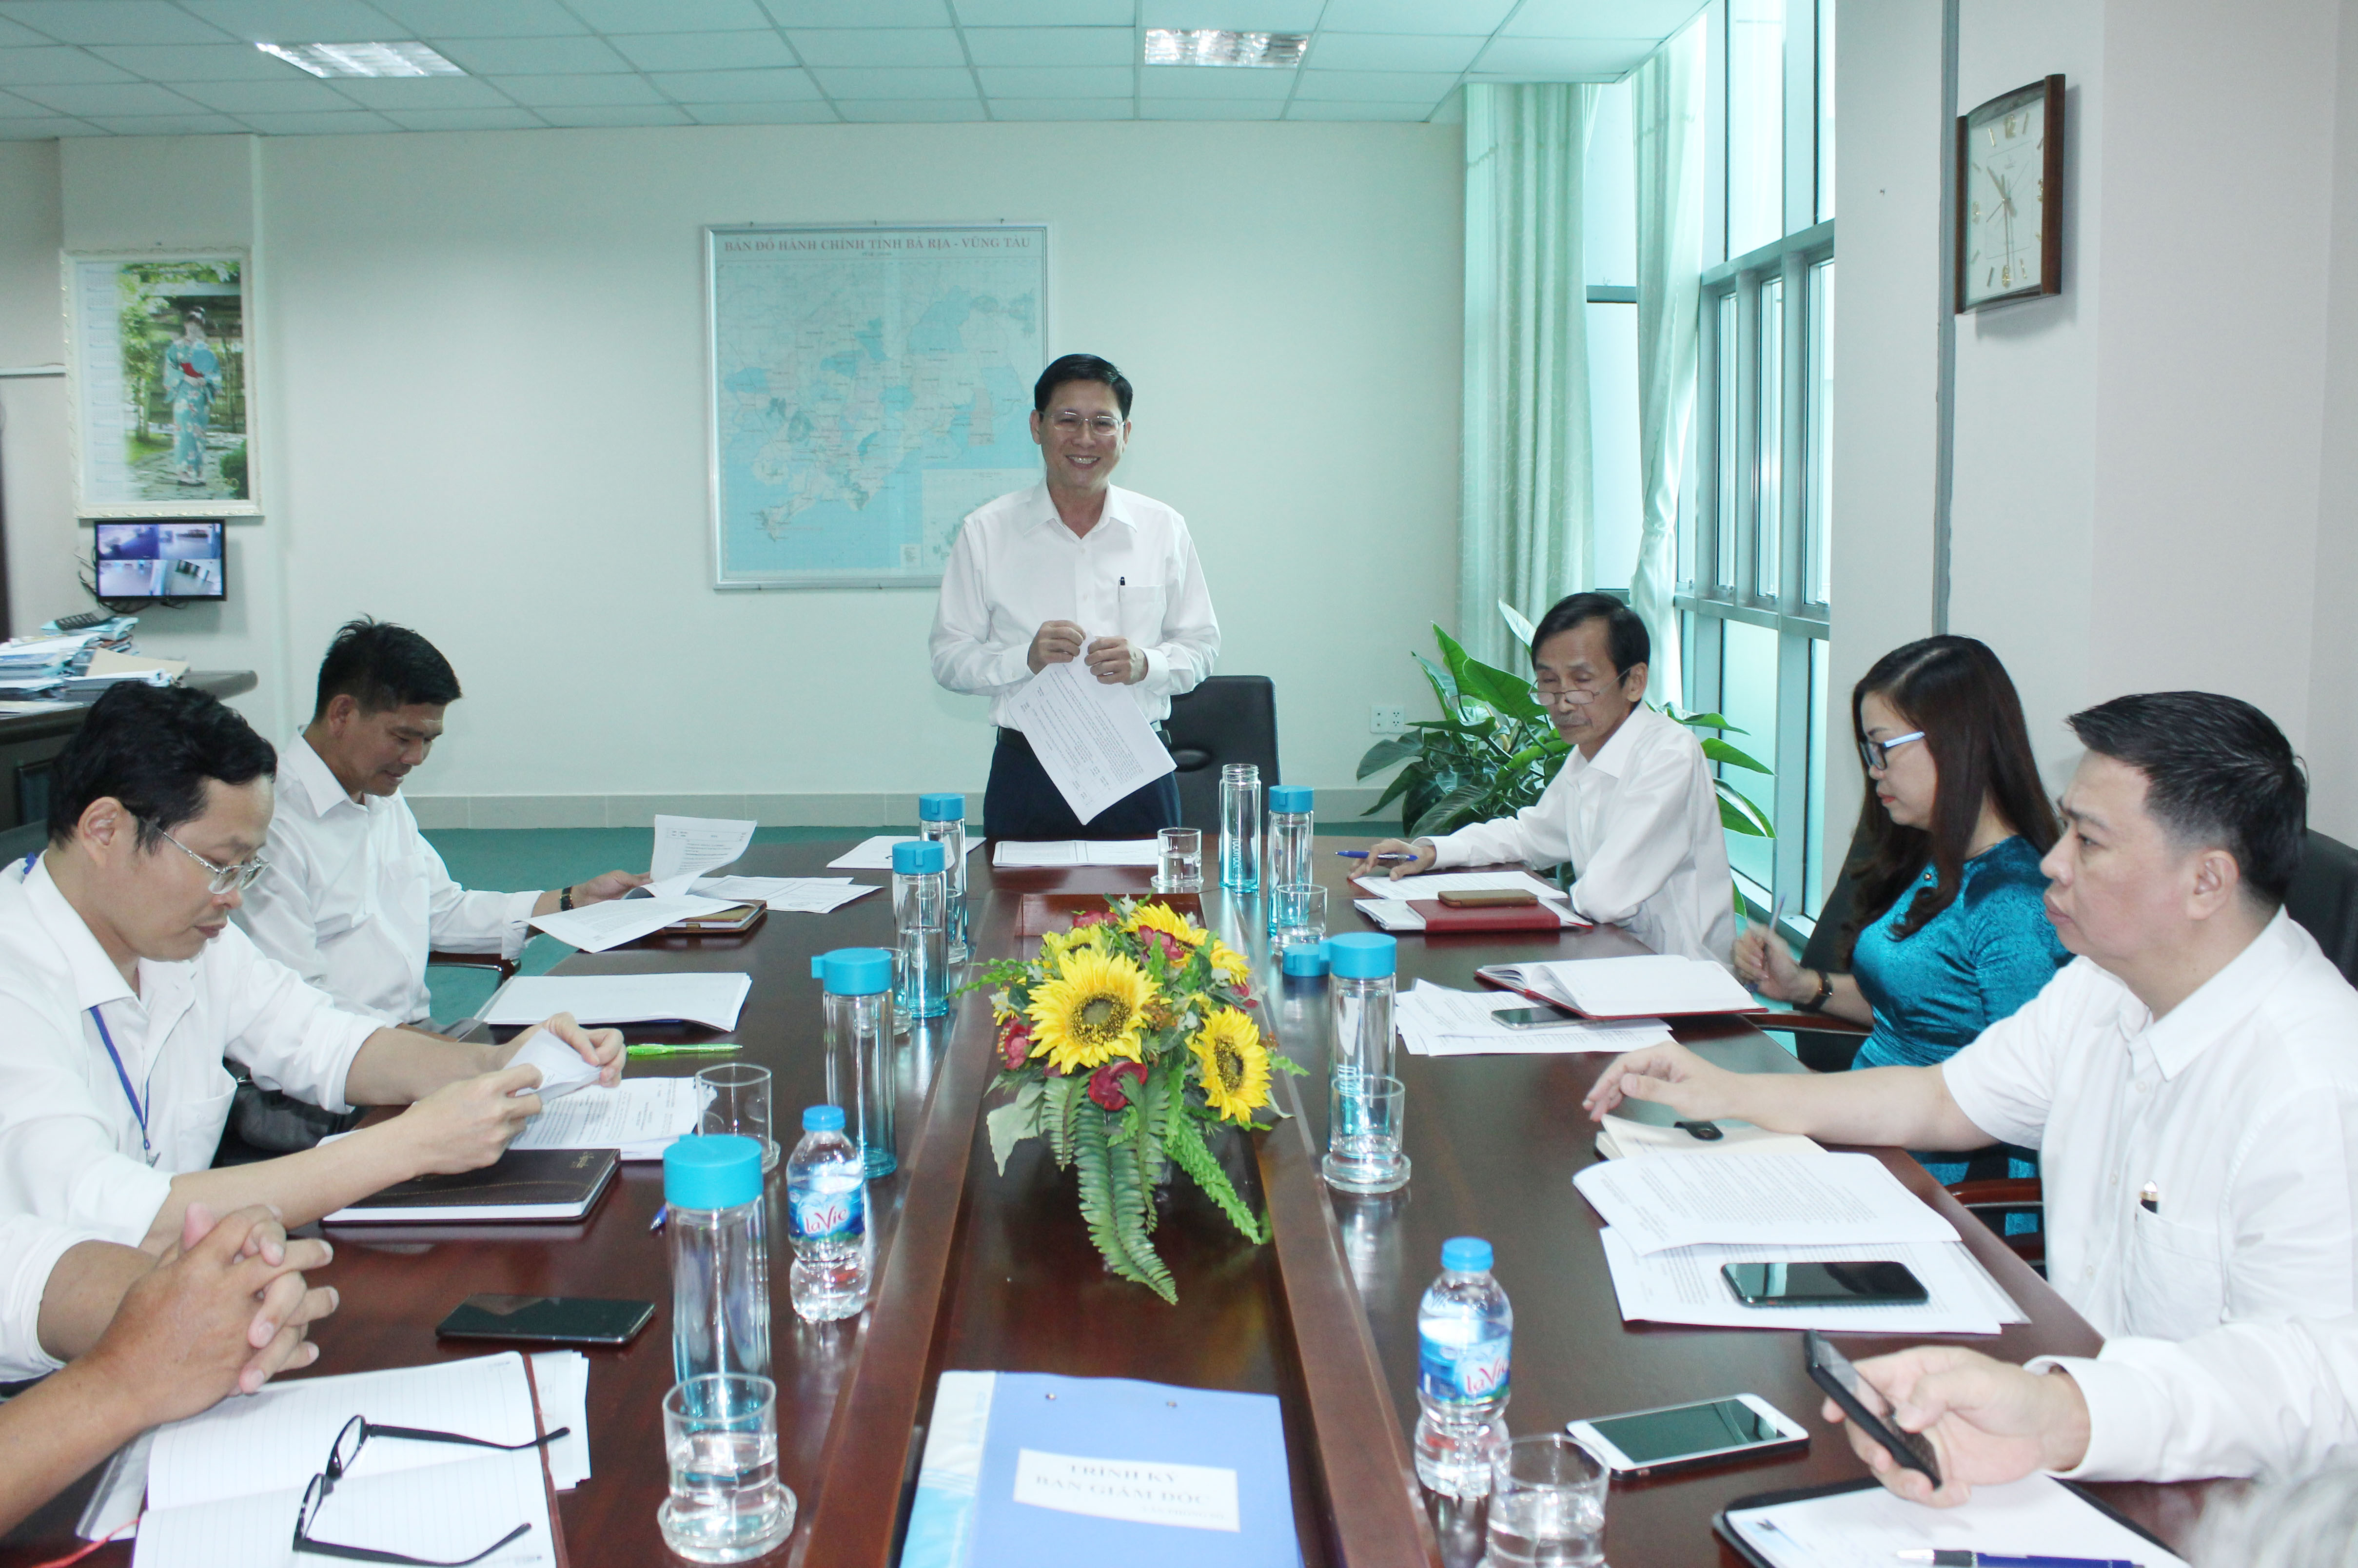 Ông Lê Ngọc Khánh, Bí thư Đảng ủy, Giám đốc Sở Tài chính chủ trì cuộc họp với các Bí thư chi bộ trực thuộc để rà soát công tác chuẩn bị Đại hội Đảng bộ Sở.